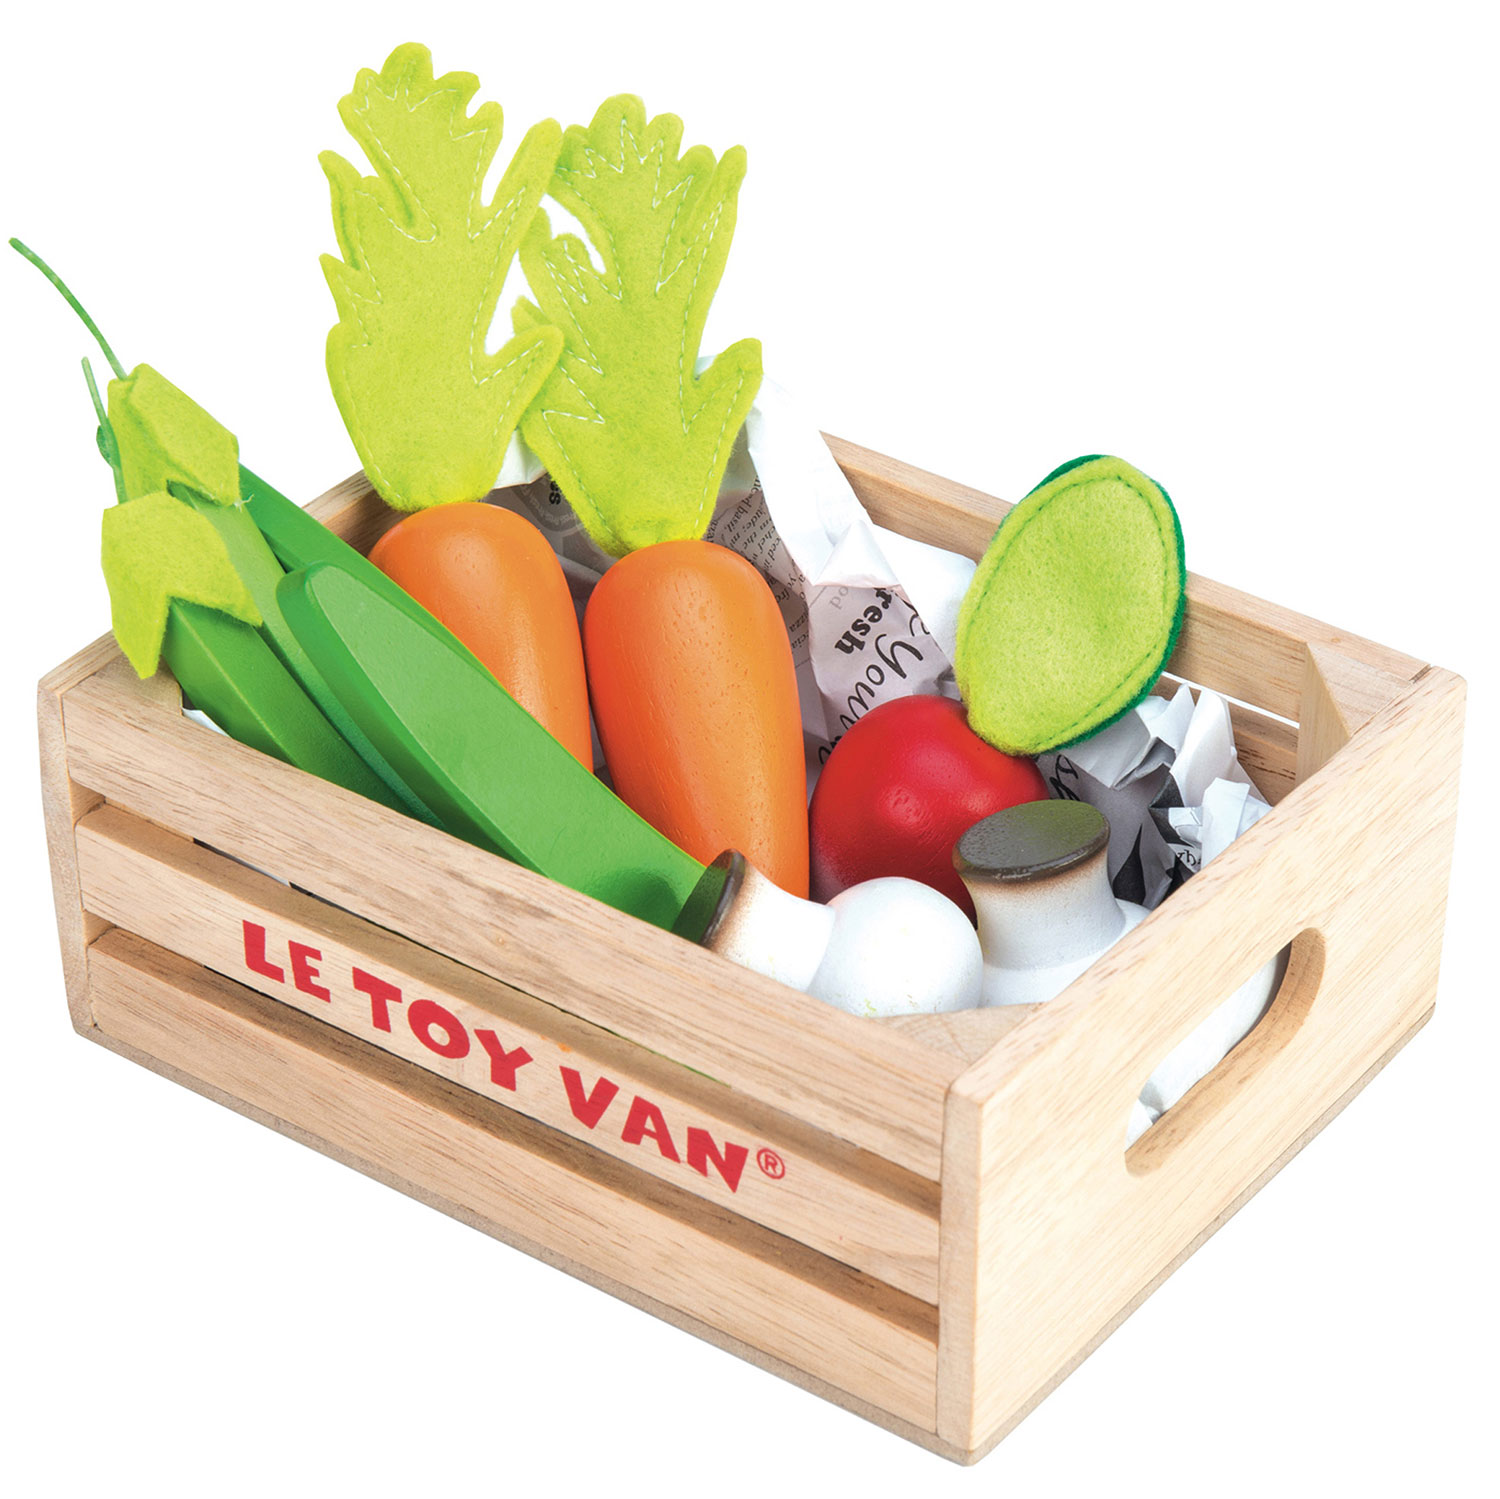 Gemüse Marktkiste / Harvest Vegetables Wooden Food Crate - 2022